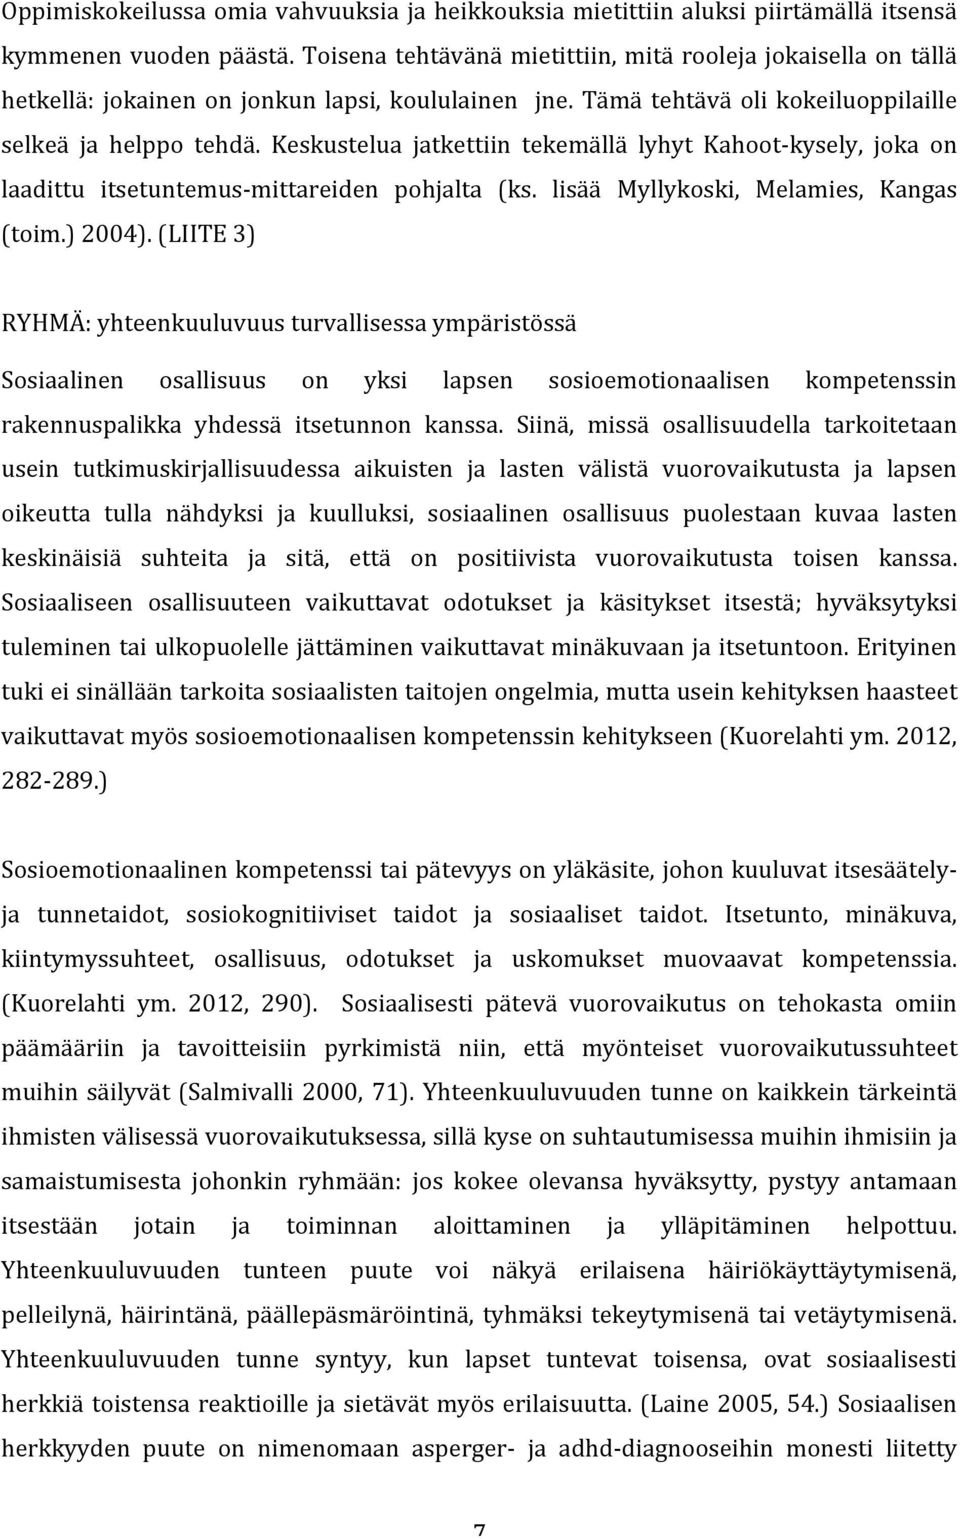 Keskustelua jatkettiin tekemällä lyhyt Kahoot- kysely, joka on laadittu itsetuntemus- mittareiden pohjalta (ks. lisää Myllykoski, Melamies, Kangas (toim.) 2004).